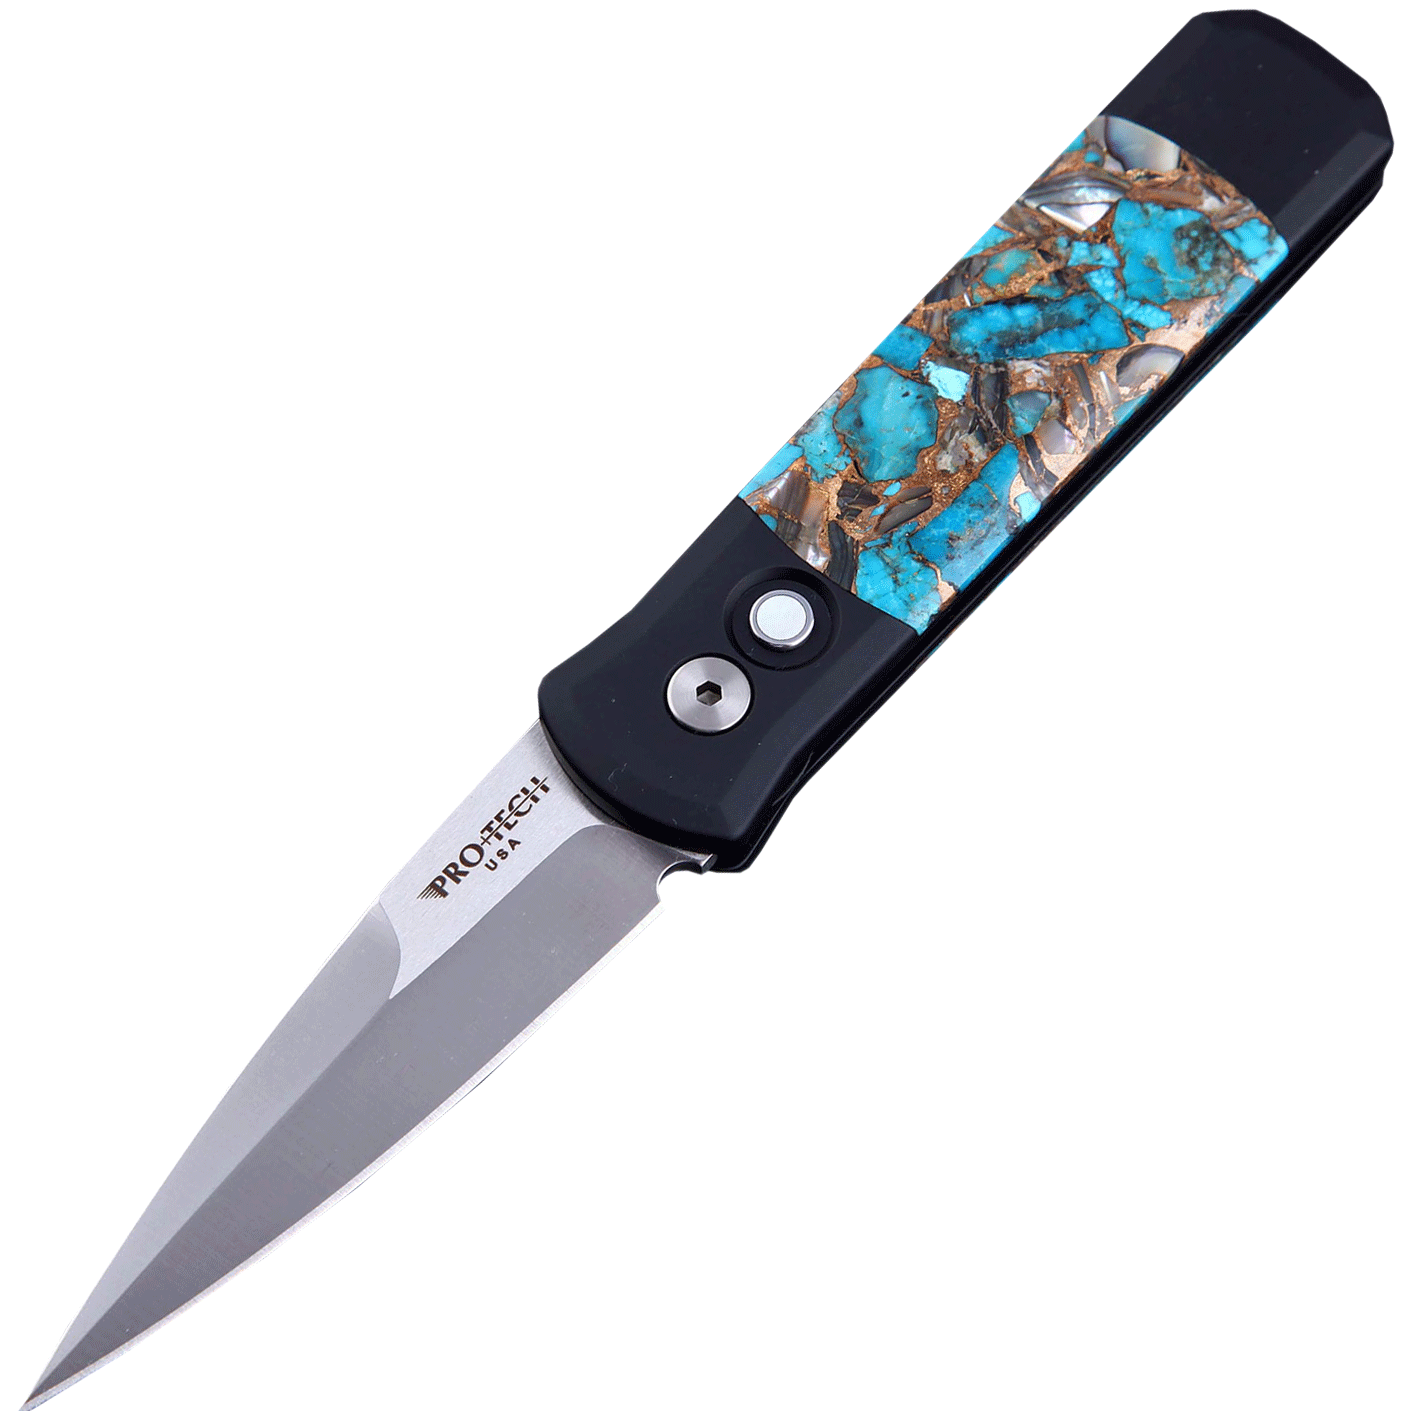 Автоматический складной нож Pro-Tech Santa Fe Stoneworks Godson Customized, сталь 154CM, рукоять алюминий, накладки бирюза/абалон/бронза